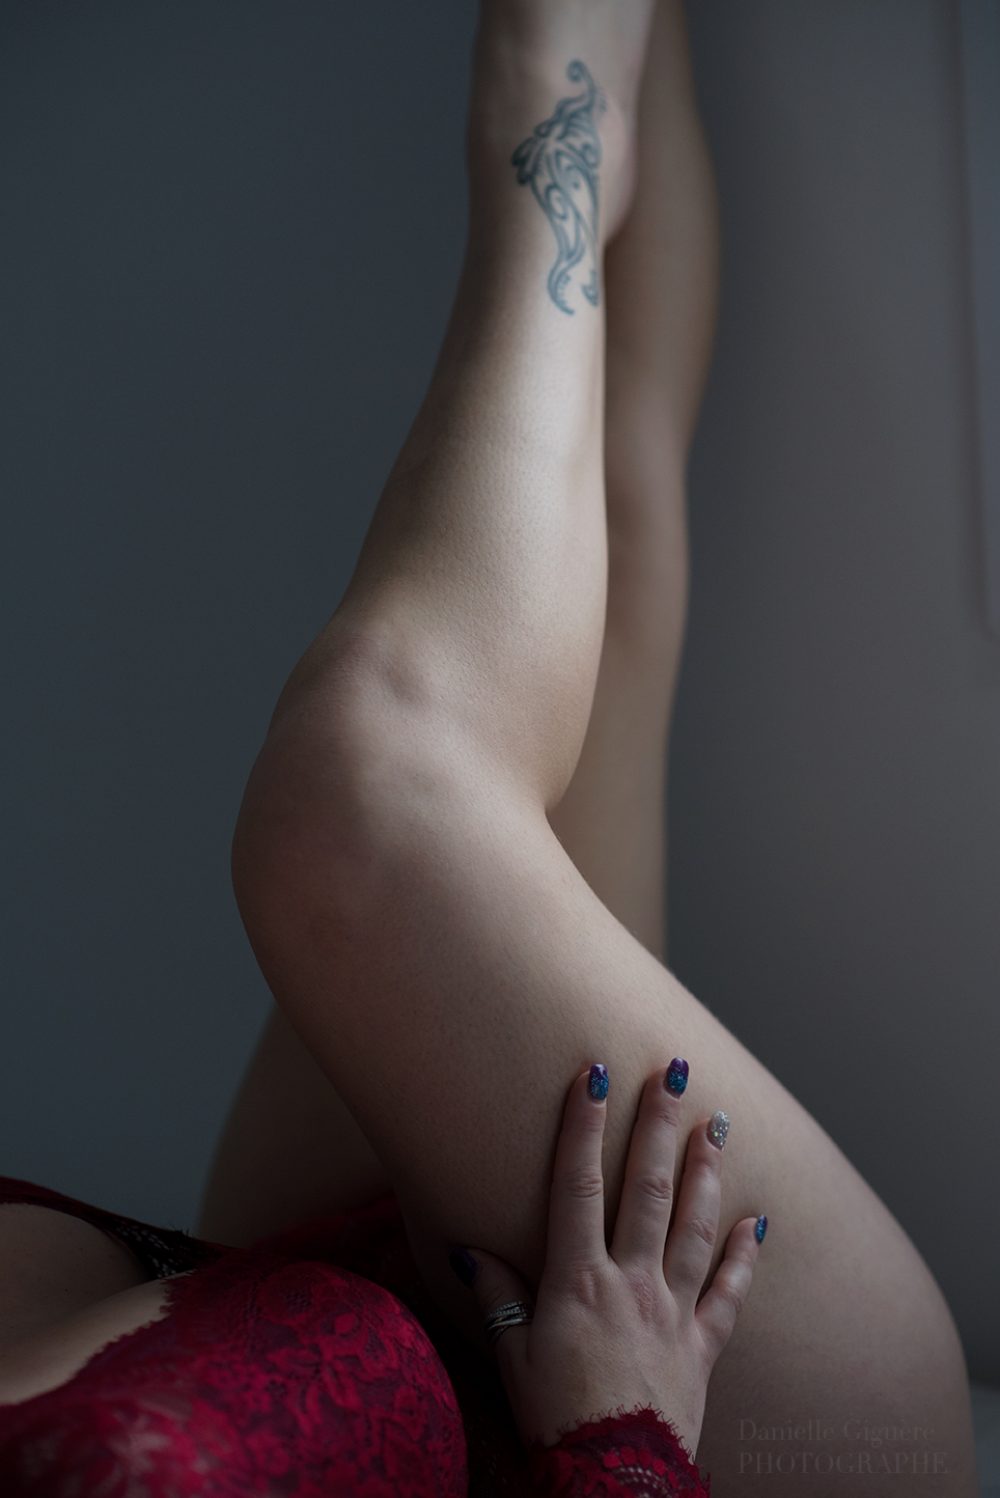 Les jambes d'une femme... toujours emblème de féminité / photo sensuelle